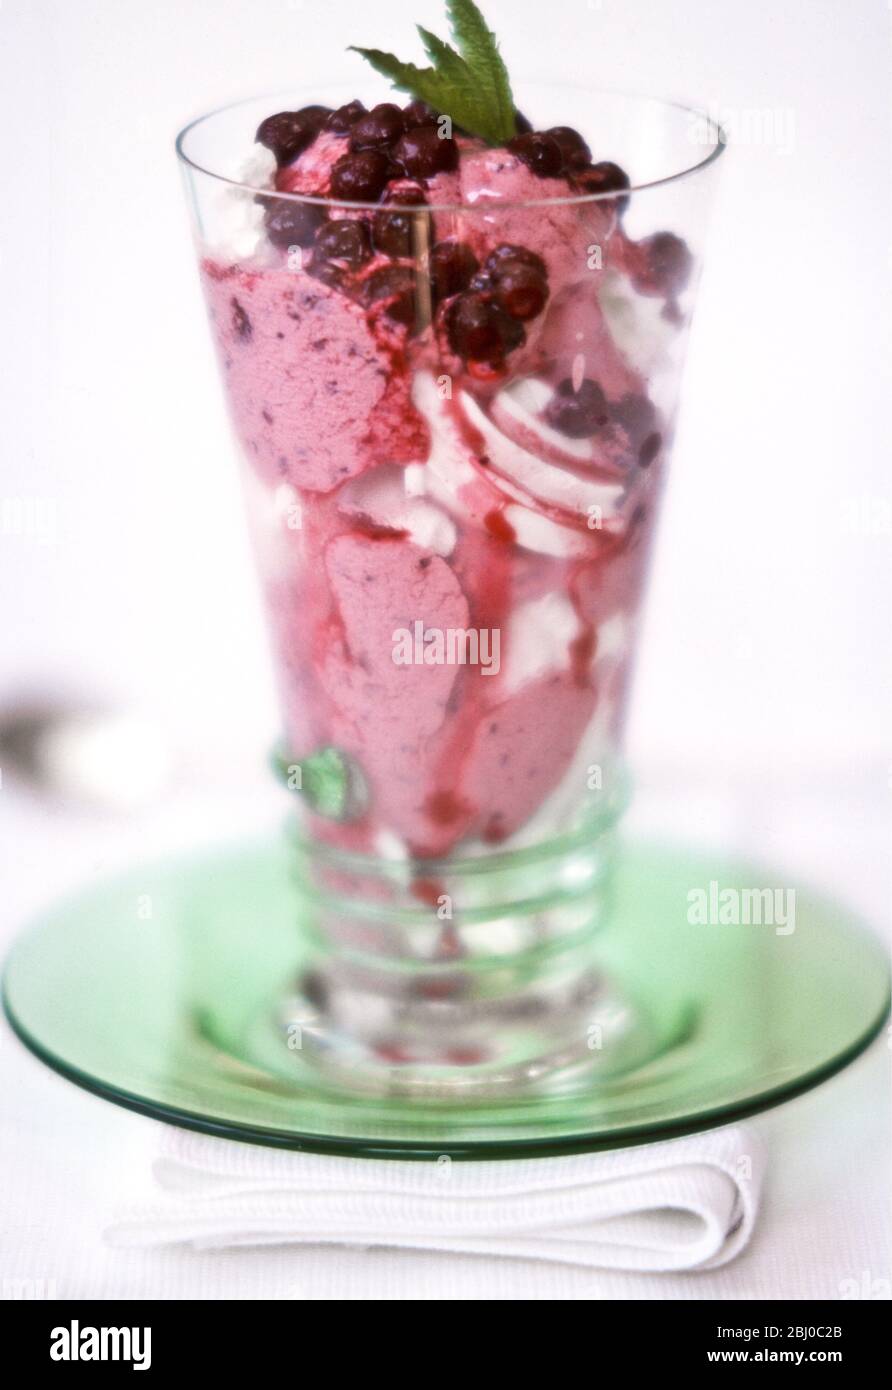 Dessert spectaculaire de glace avec cassis et coulis de fruits frais surmontés d'une plate-forme à la menthe - Banque D'Images